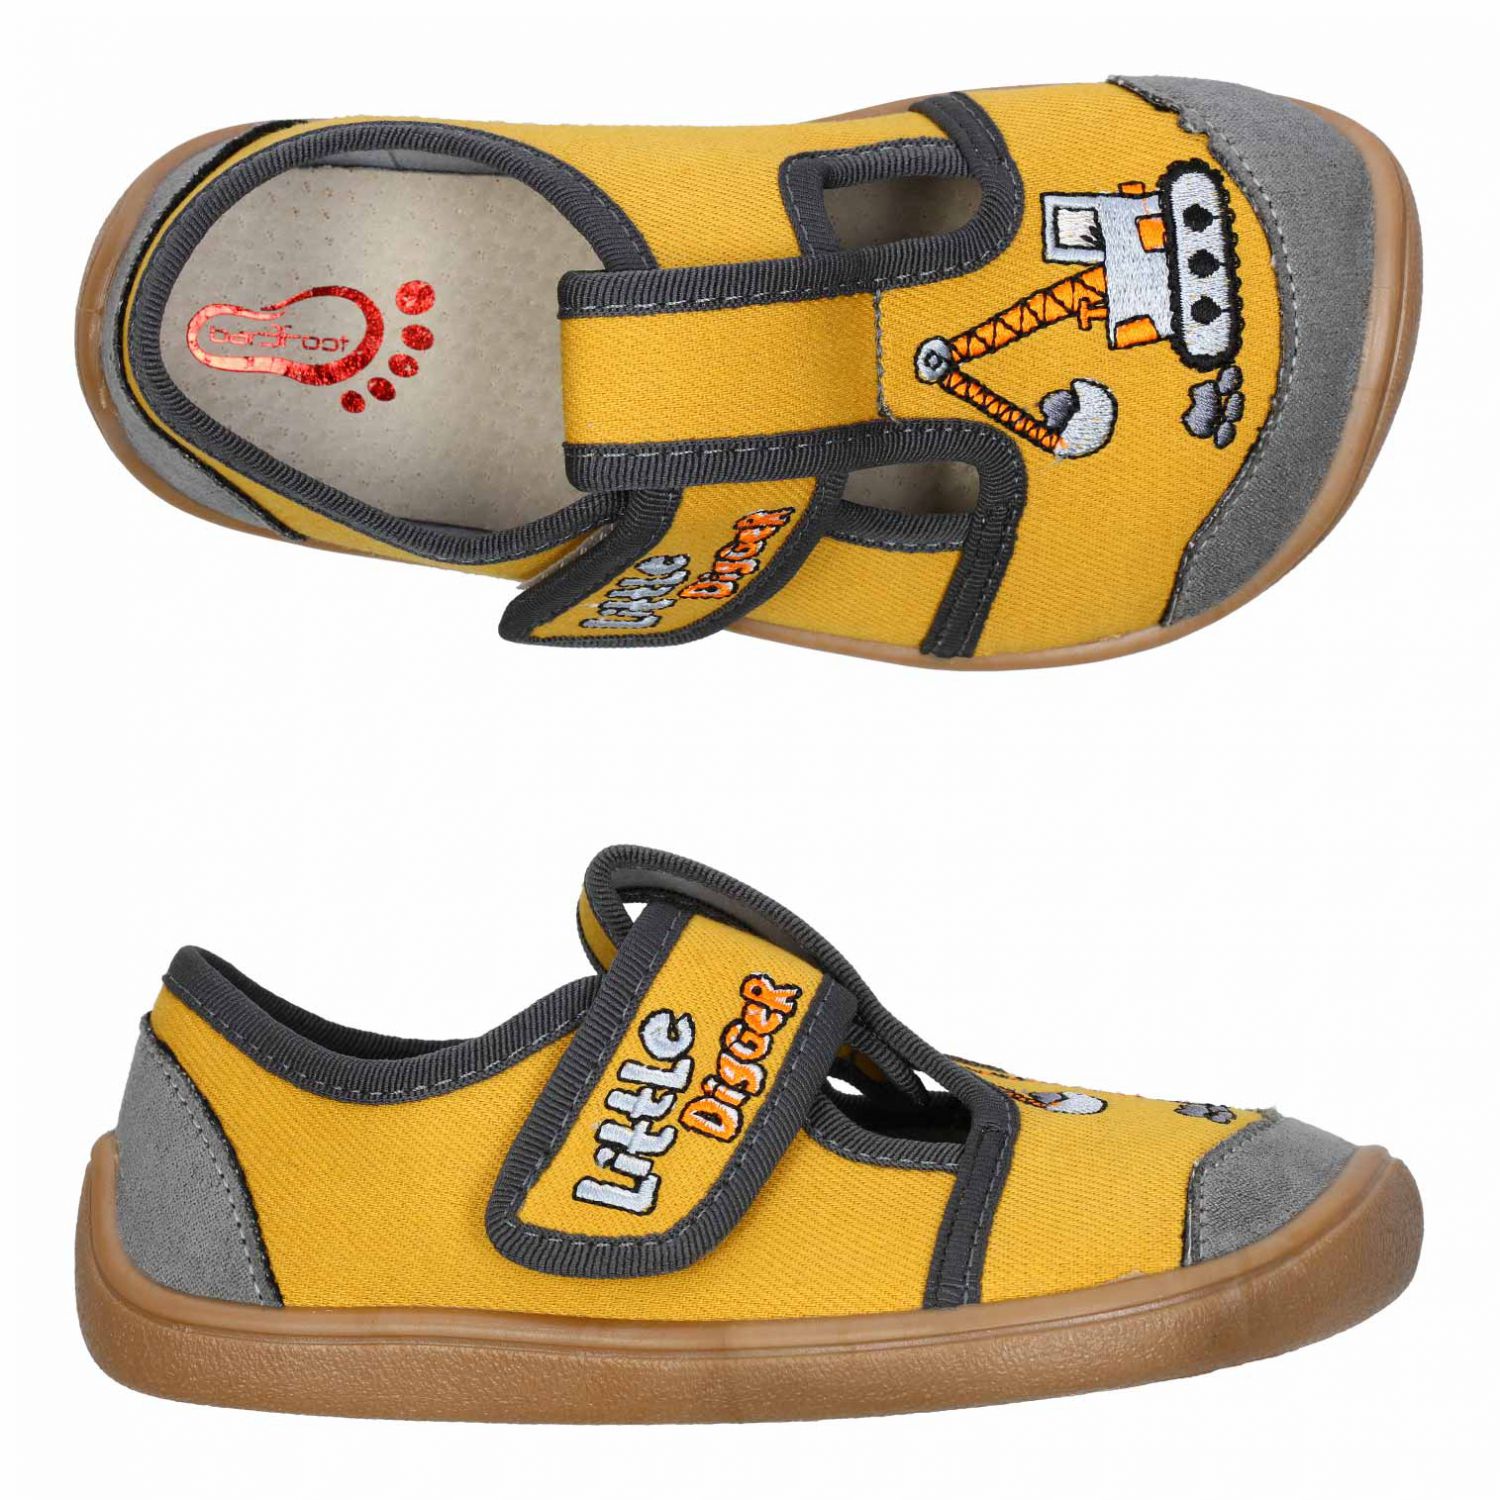 3F Barefoot papuče žlté bager-31